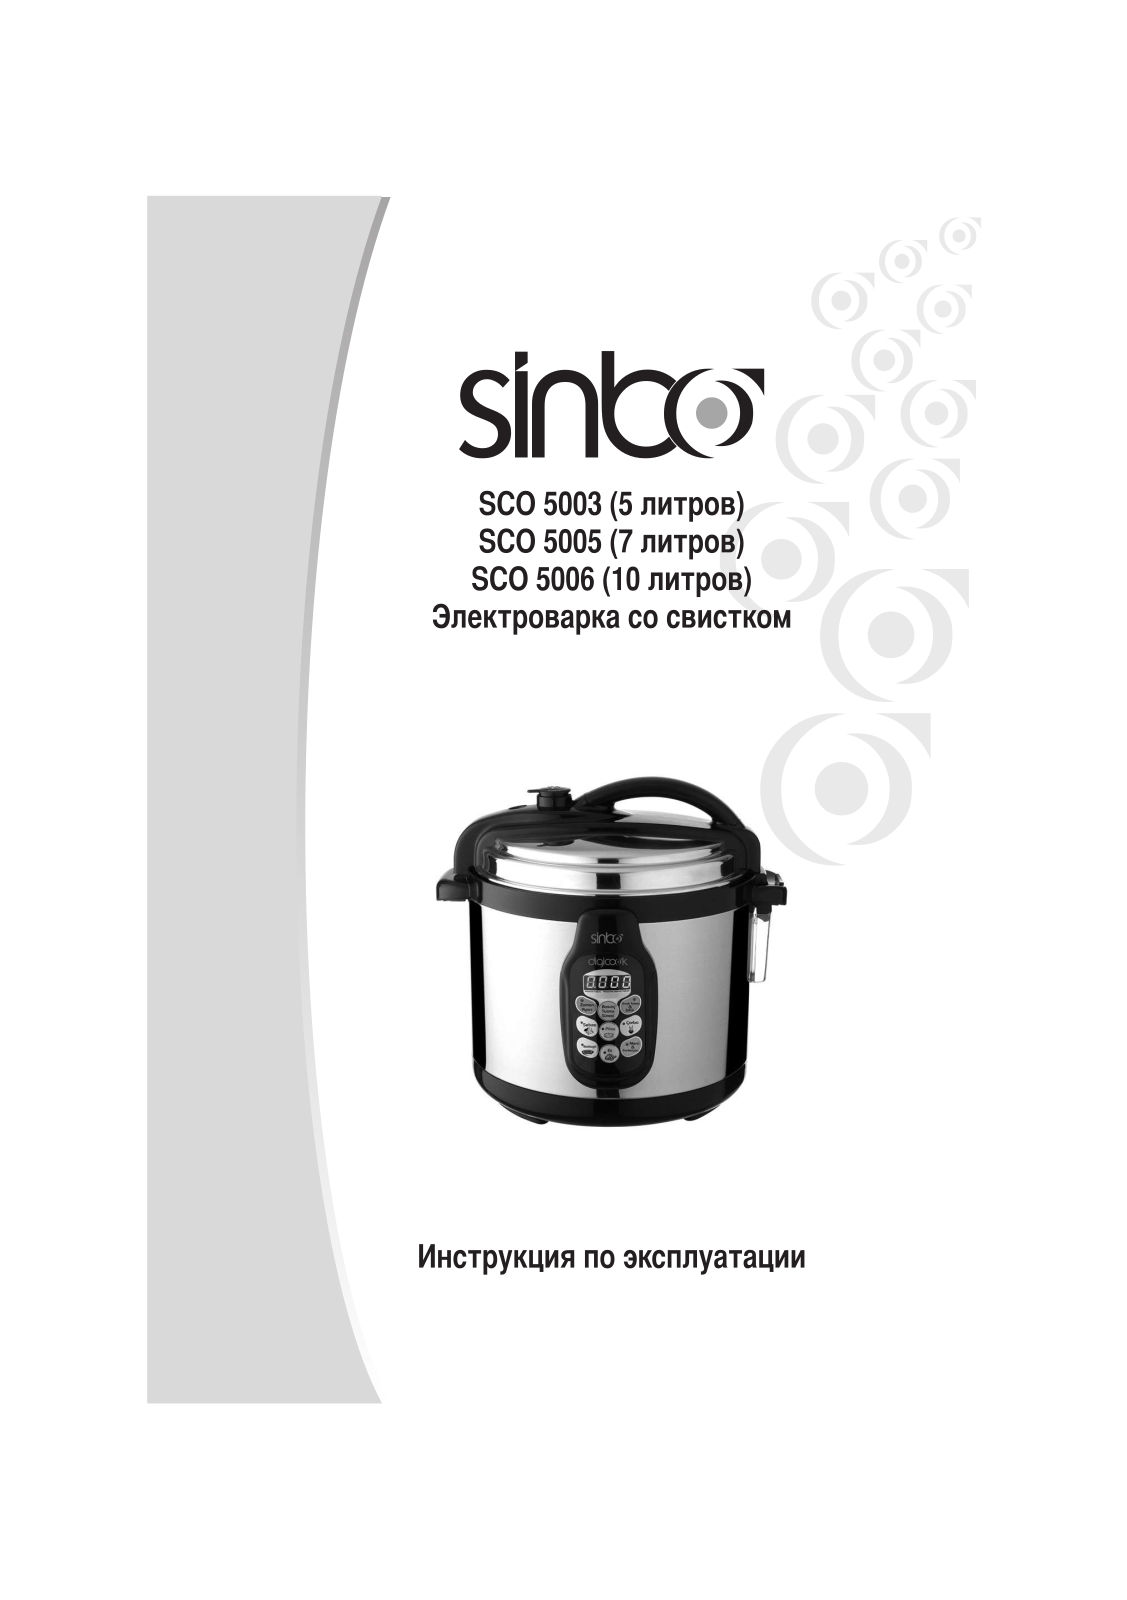 Sinbo SCO 5005, SCO 5006 User Manual